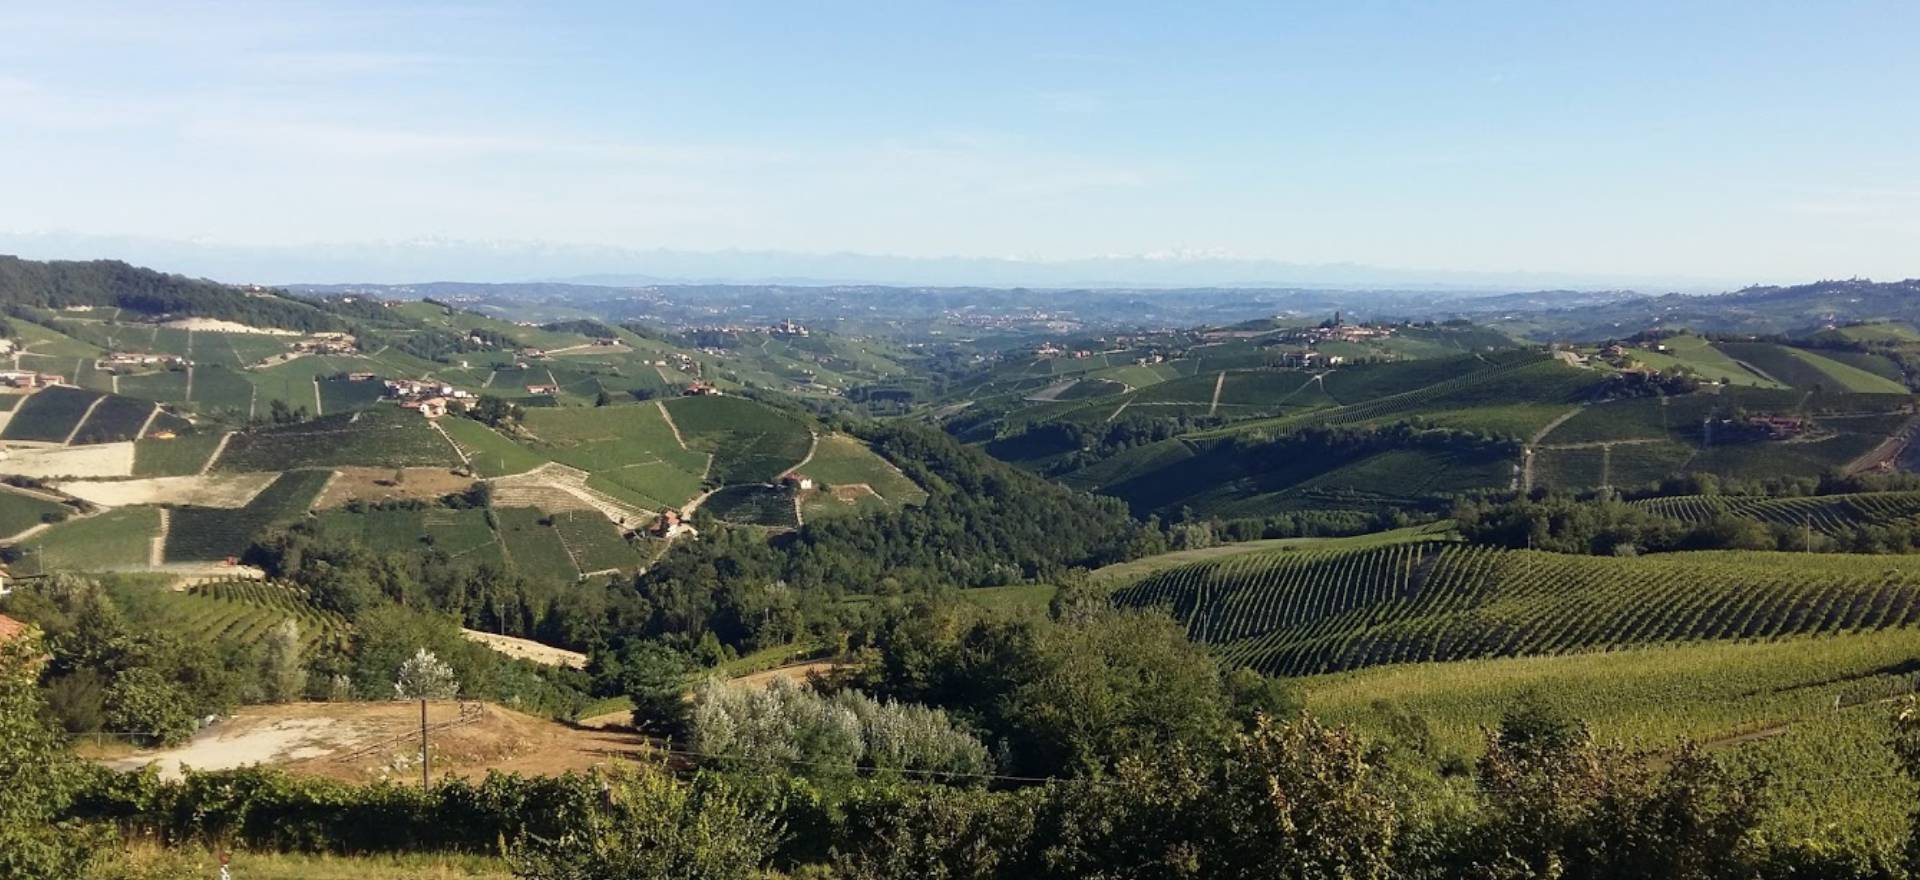 Agriturismo Piemonte, goed restaurant en wijnkelder